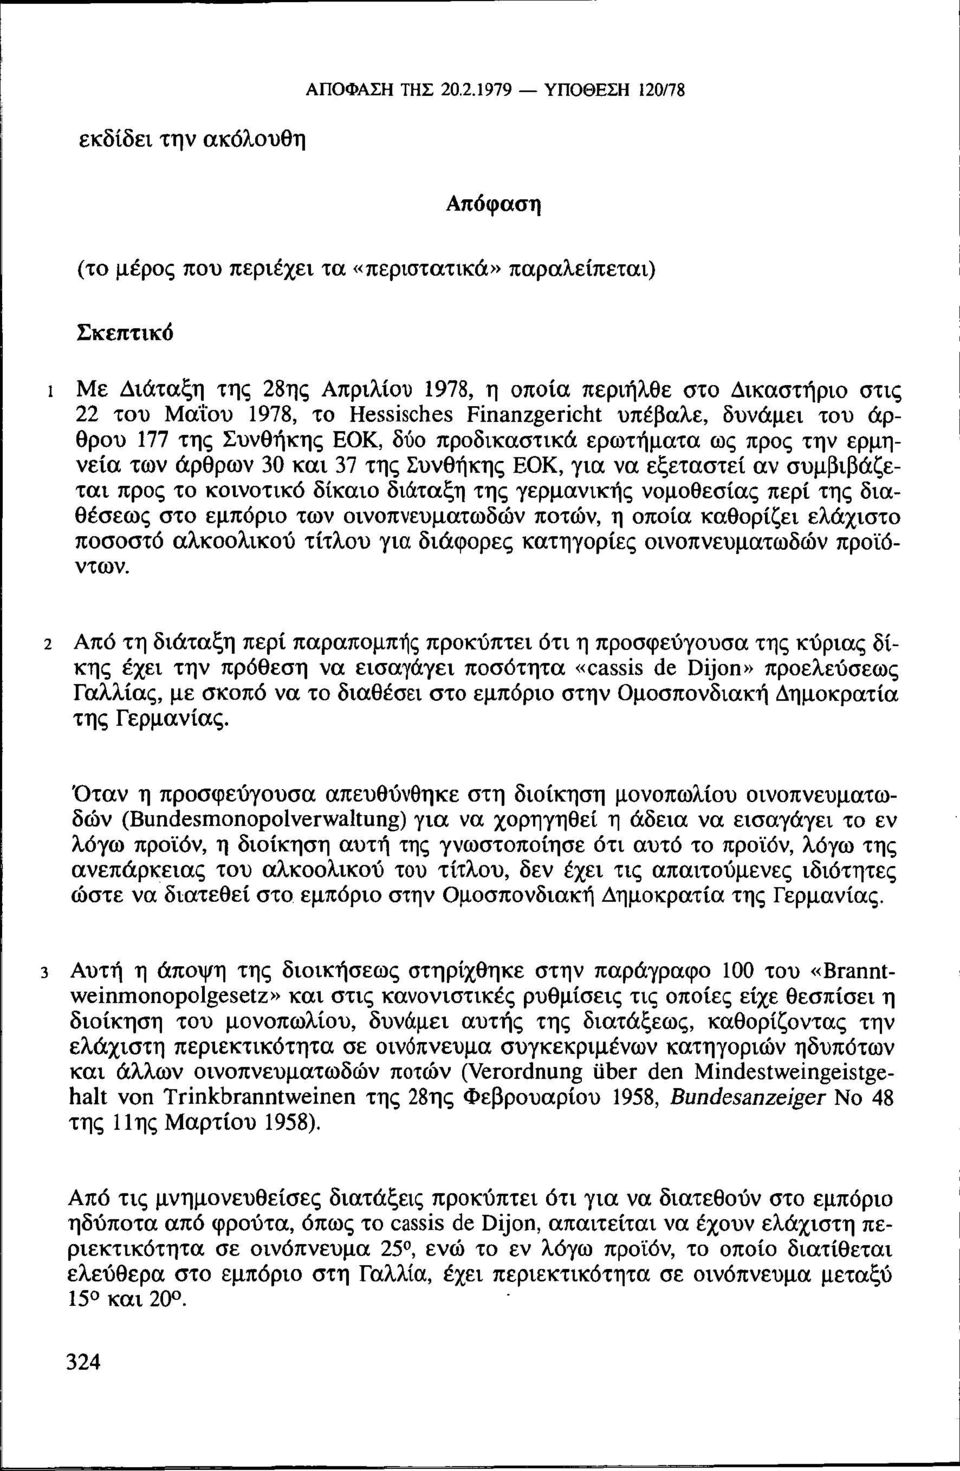 Μαΐου 1978, το Hessisches Finanzgericht υπέβαλε, δυνάμει του άρθρου 177 της Συνθήκης ΕΟΚ, δύο προδικαστικά ερωτήματα ως προς την ερμηνεία των άρθρων 30 και 37 της Συνθήκης ΕΟΚ, για να εξεταστεί αν